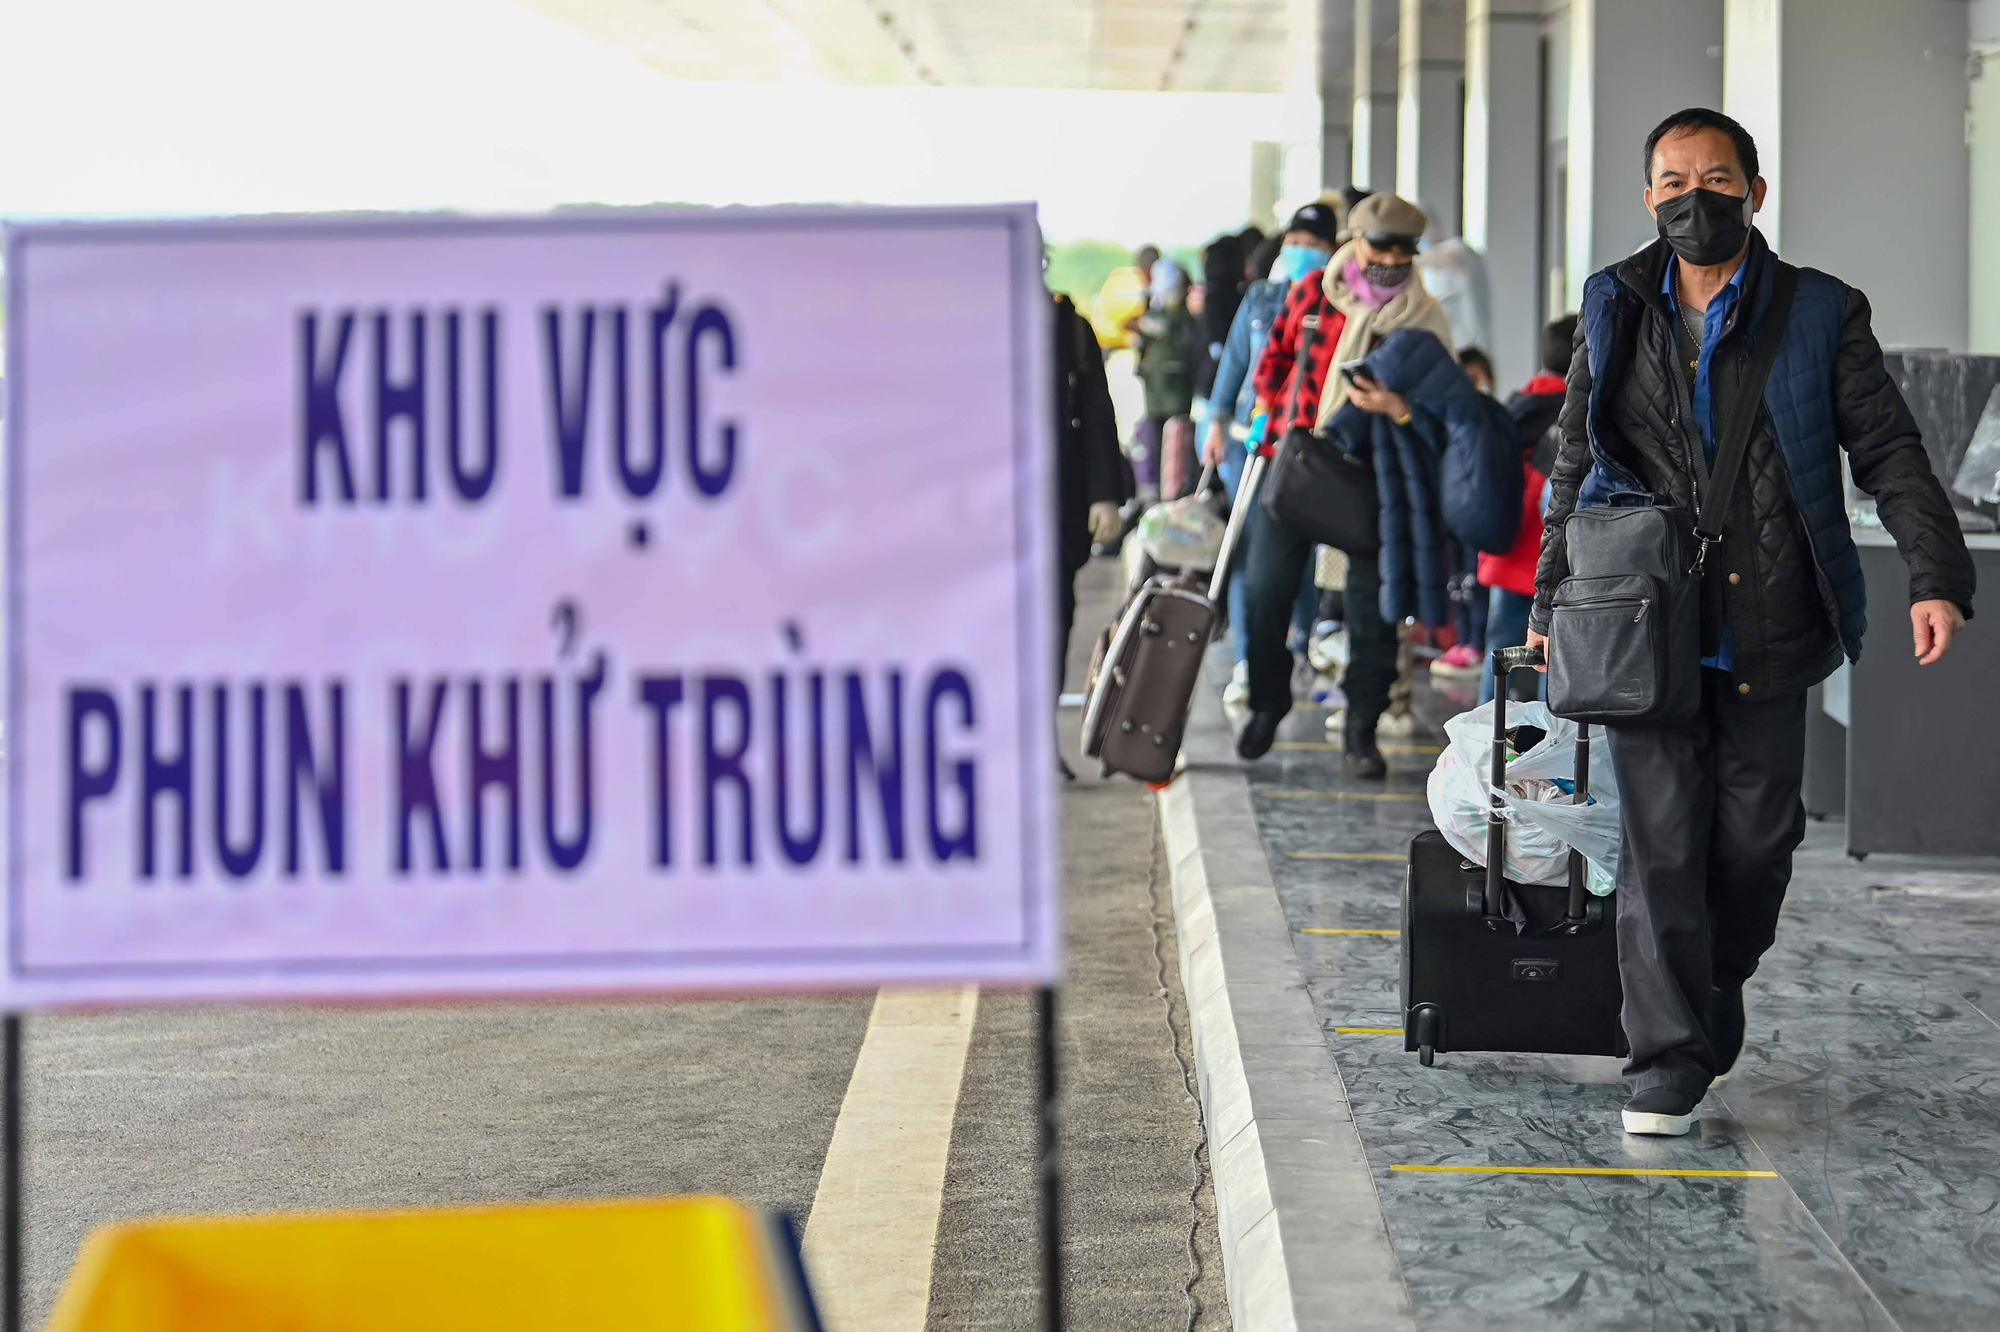 Cận cảnh chuyến bay đặc biệt đưa người Việt Nam từ Ukraine hạ cánh tại sân bay Vân Đồn - Ảnh 2.